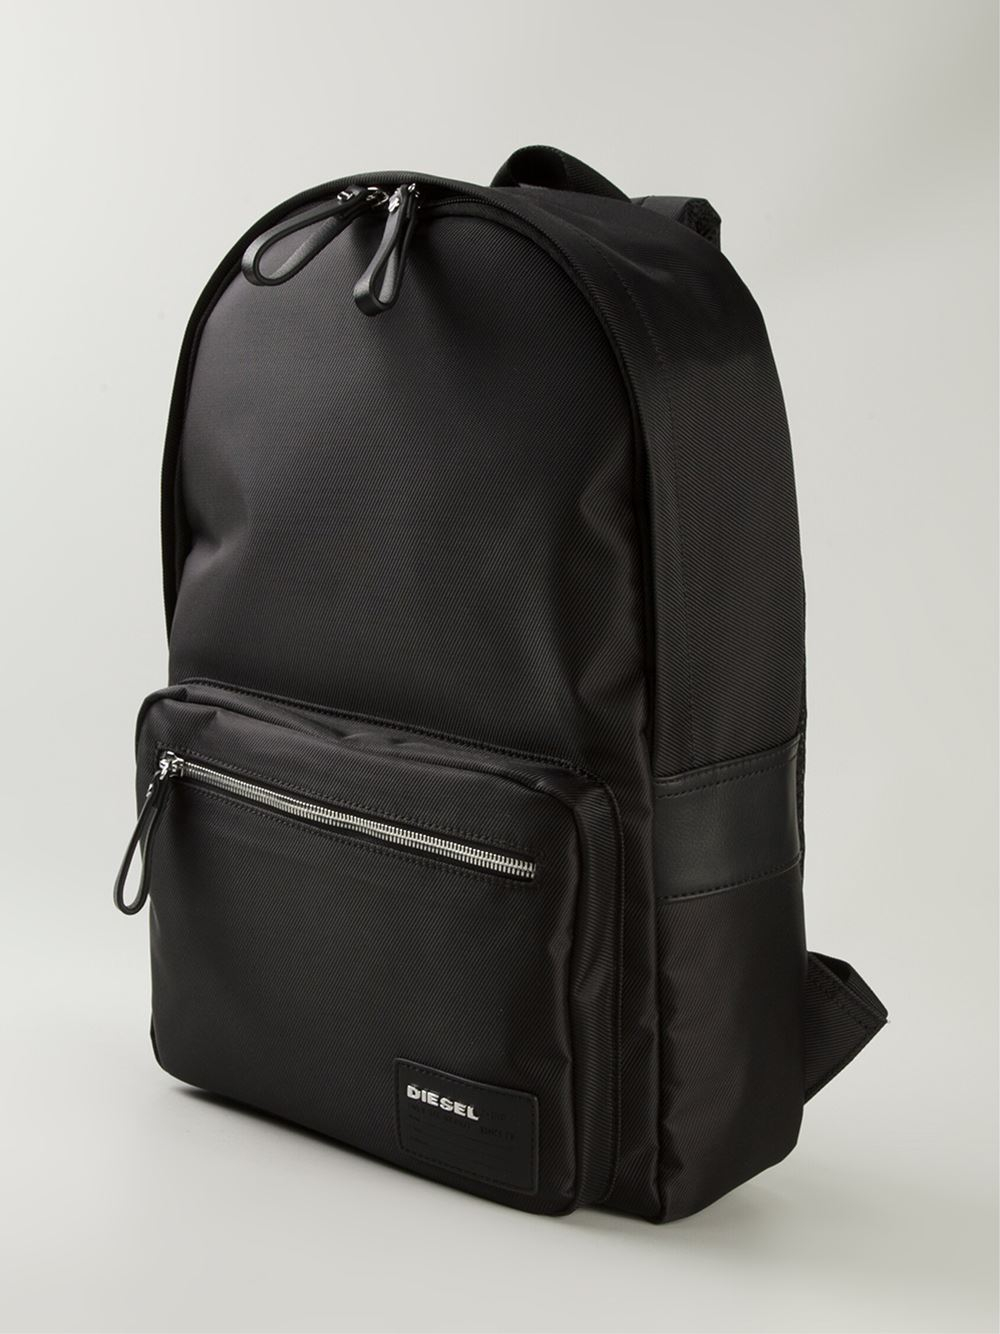 Diesel 'Drumroll' Backpack in Black for Men | Lyst